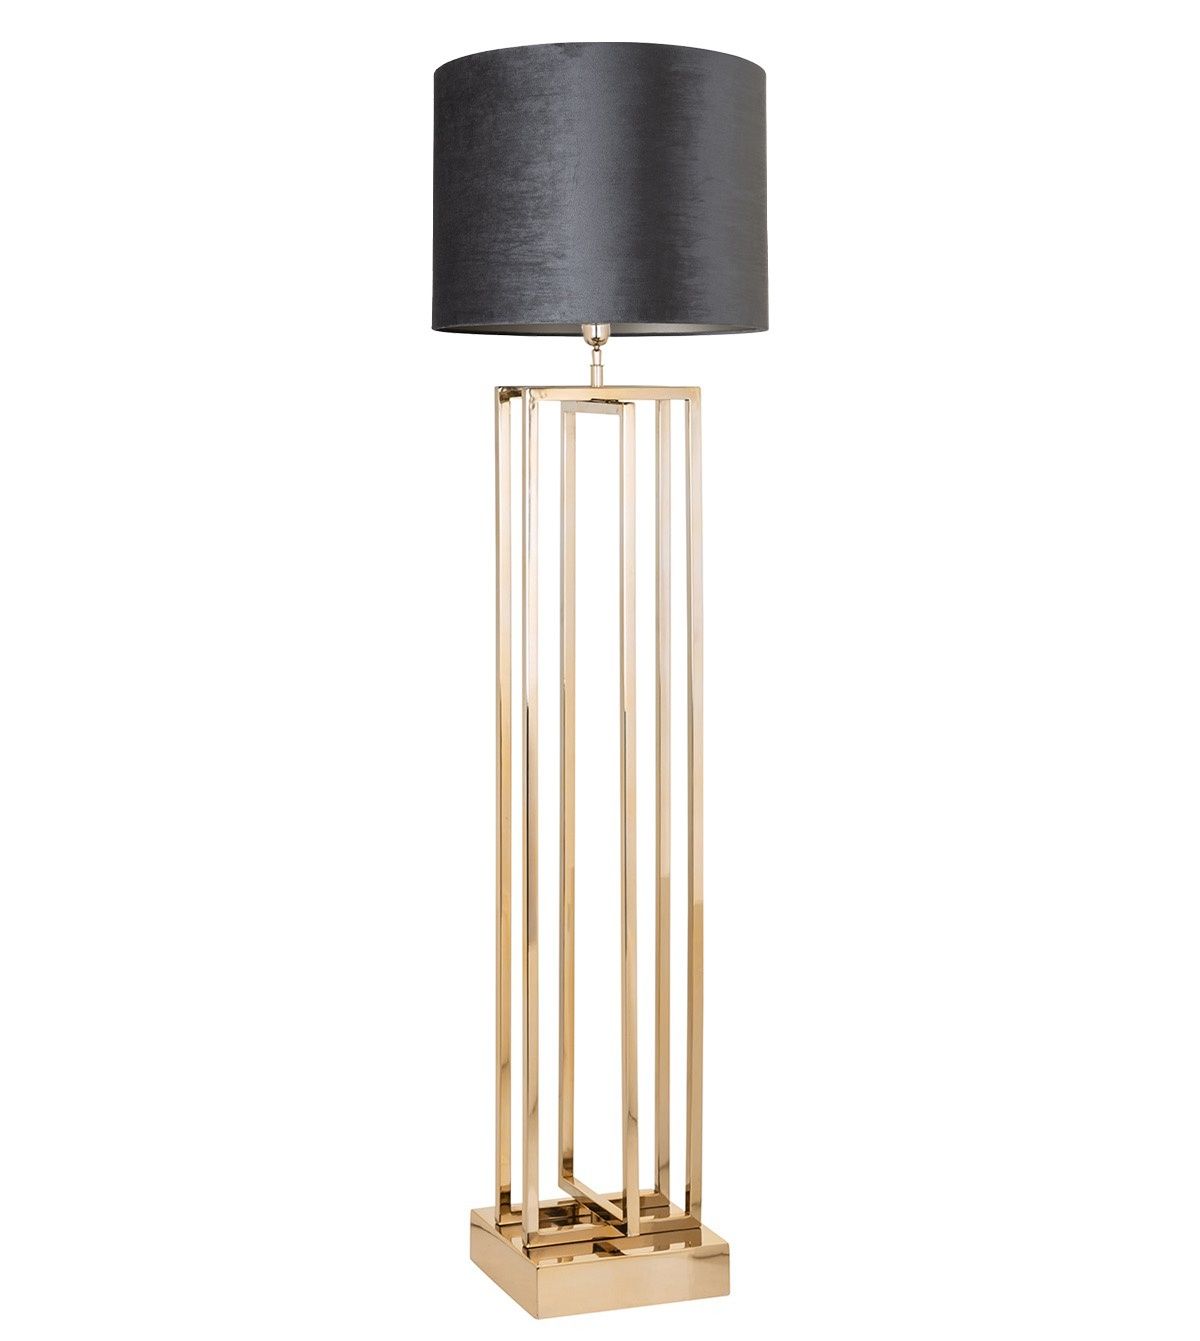 Floor Lamp "jay" Geometric Golden Stainless Steel Throughout Stainless Steel Floor Lamps (View 11 of 15)